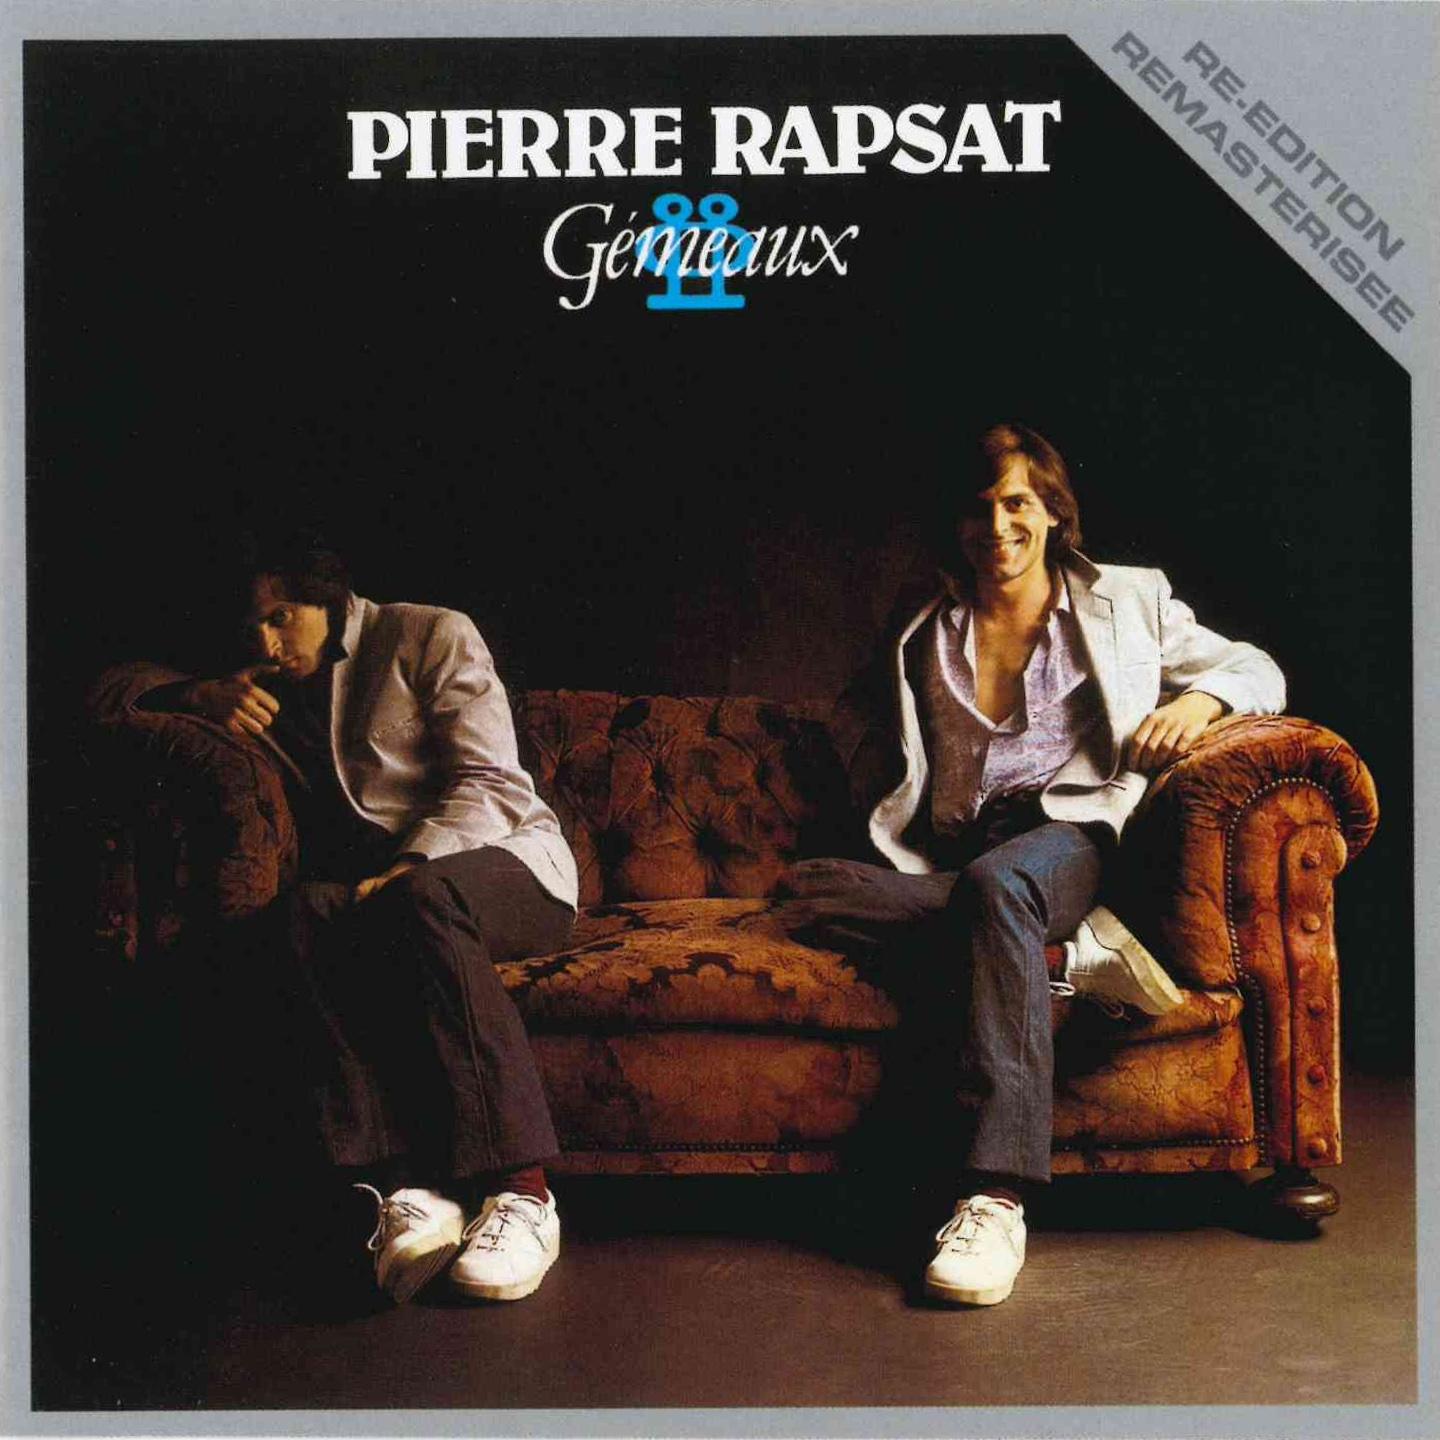 Pierre Rapsat - Les mots